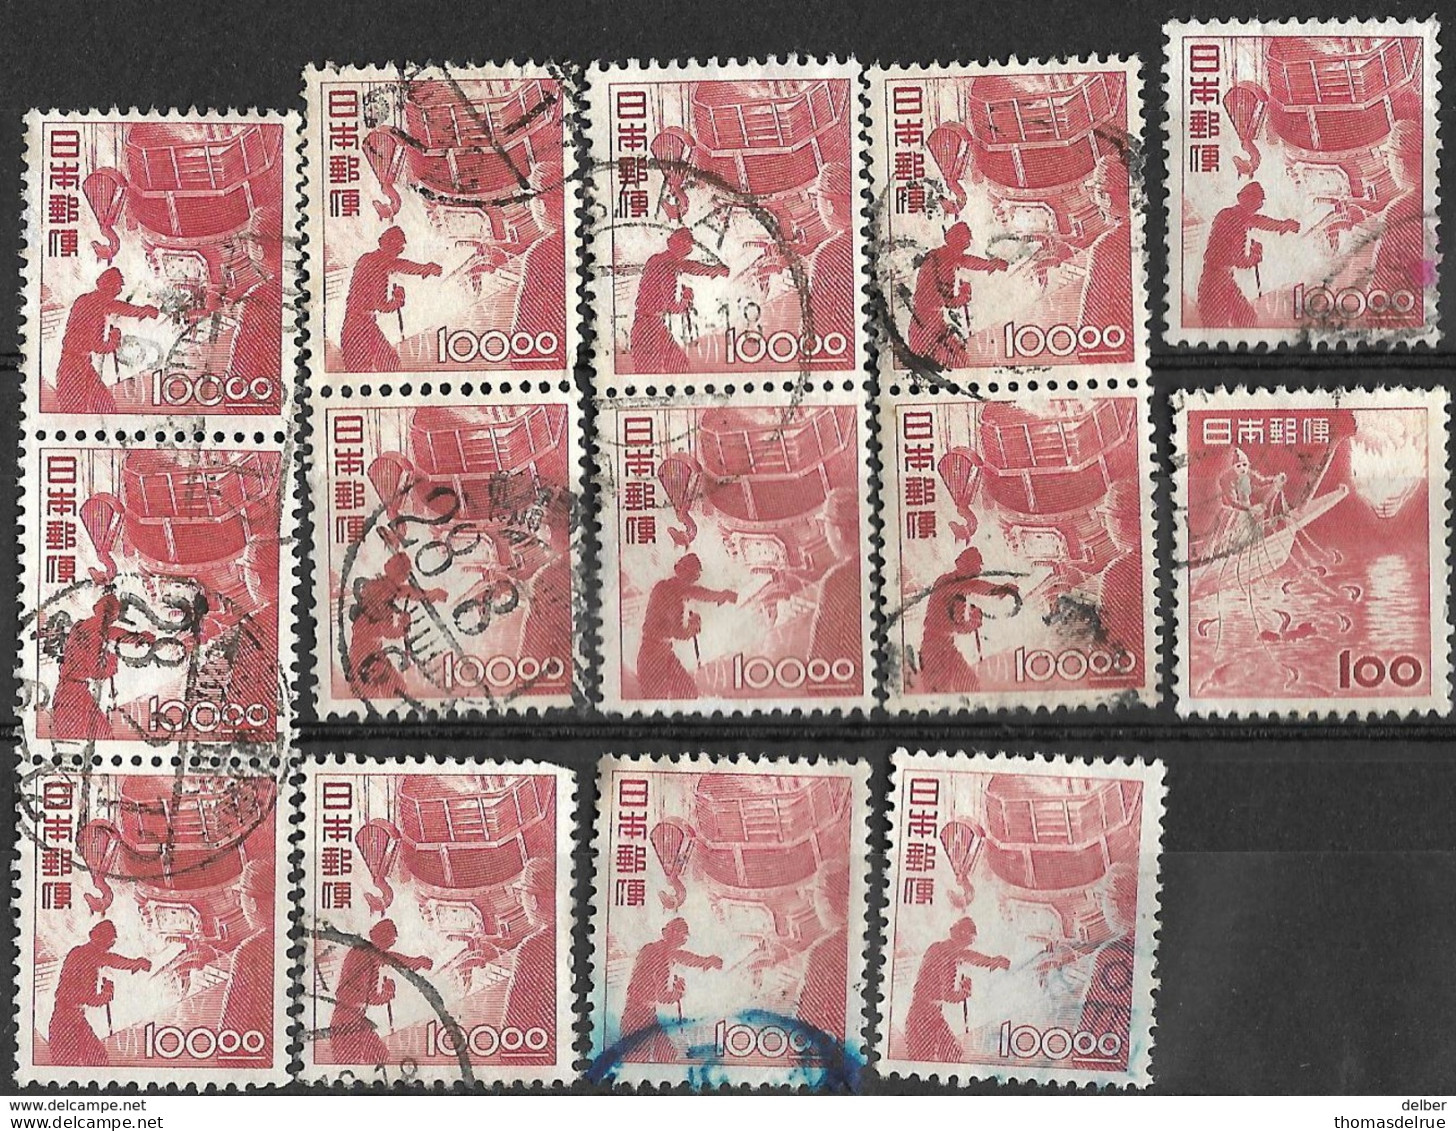 _6R-599: Restje Van  14 Zegels ...om Verder Uit Te Zoeken - Used Stamps